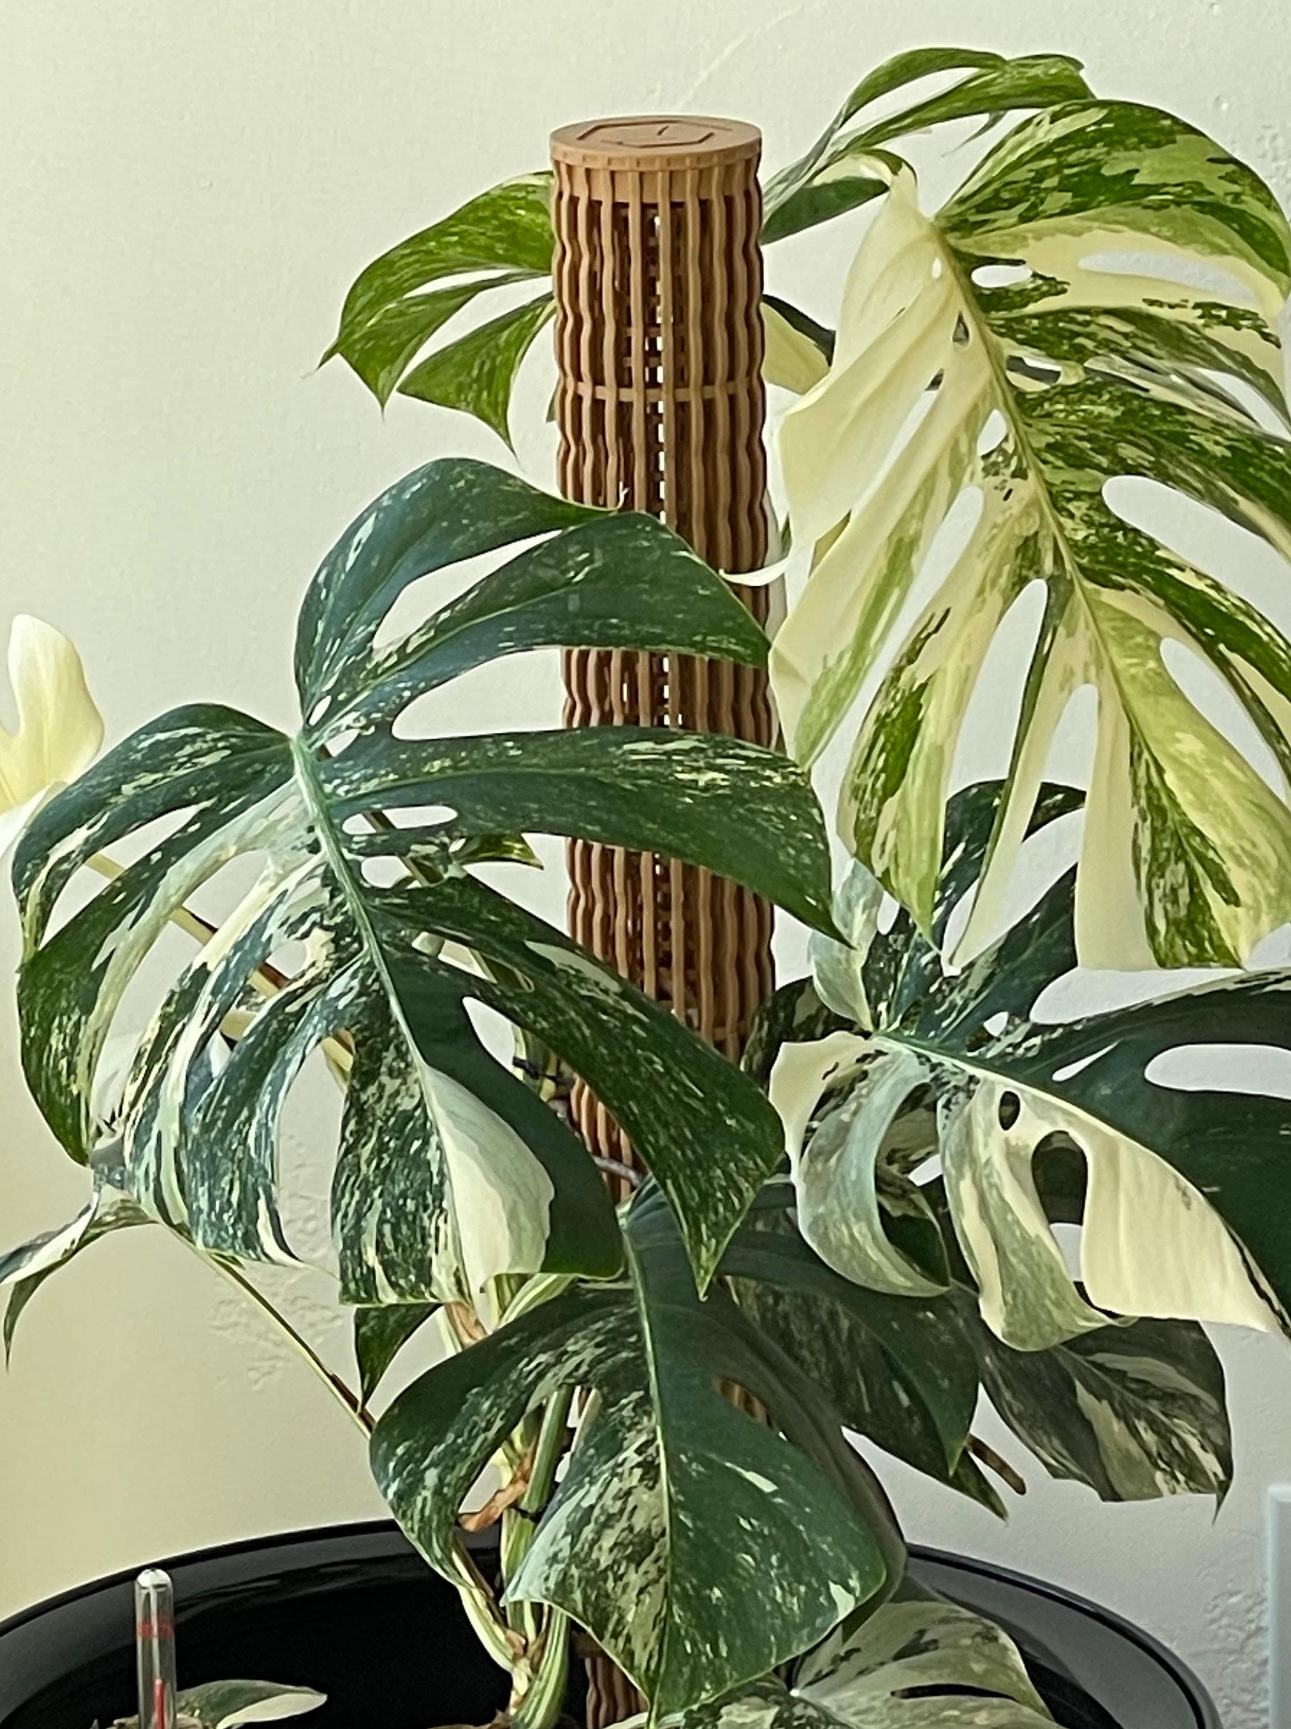 1.92″Φ/Medium Designer Moss Pole - Modular Extendable Plant Moss Pole –  OrchidBox